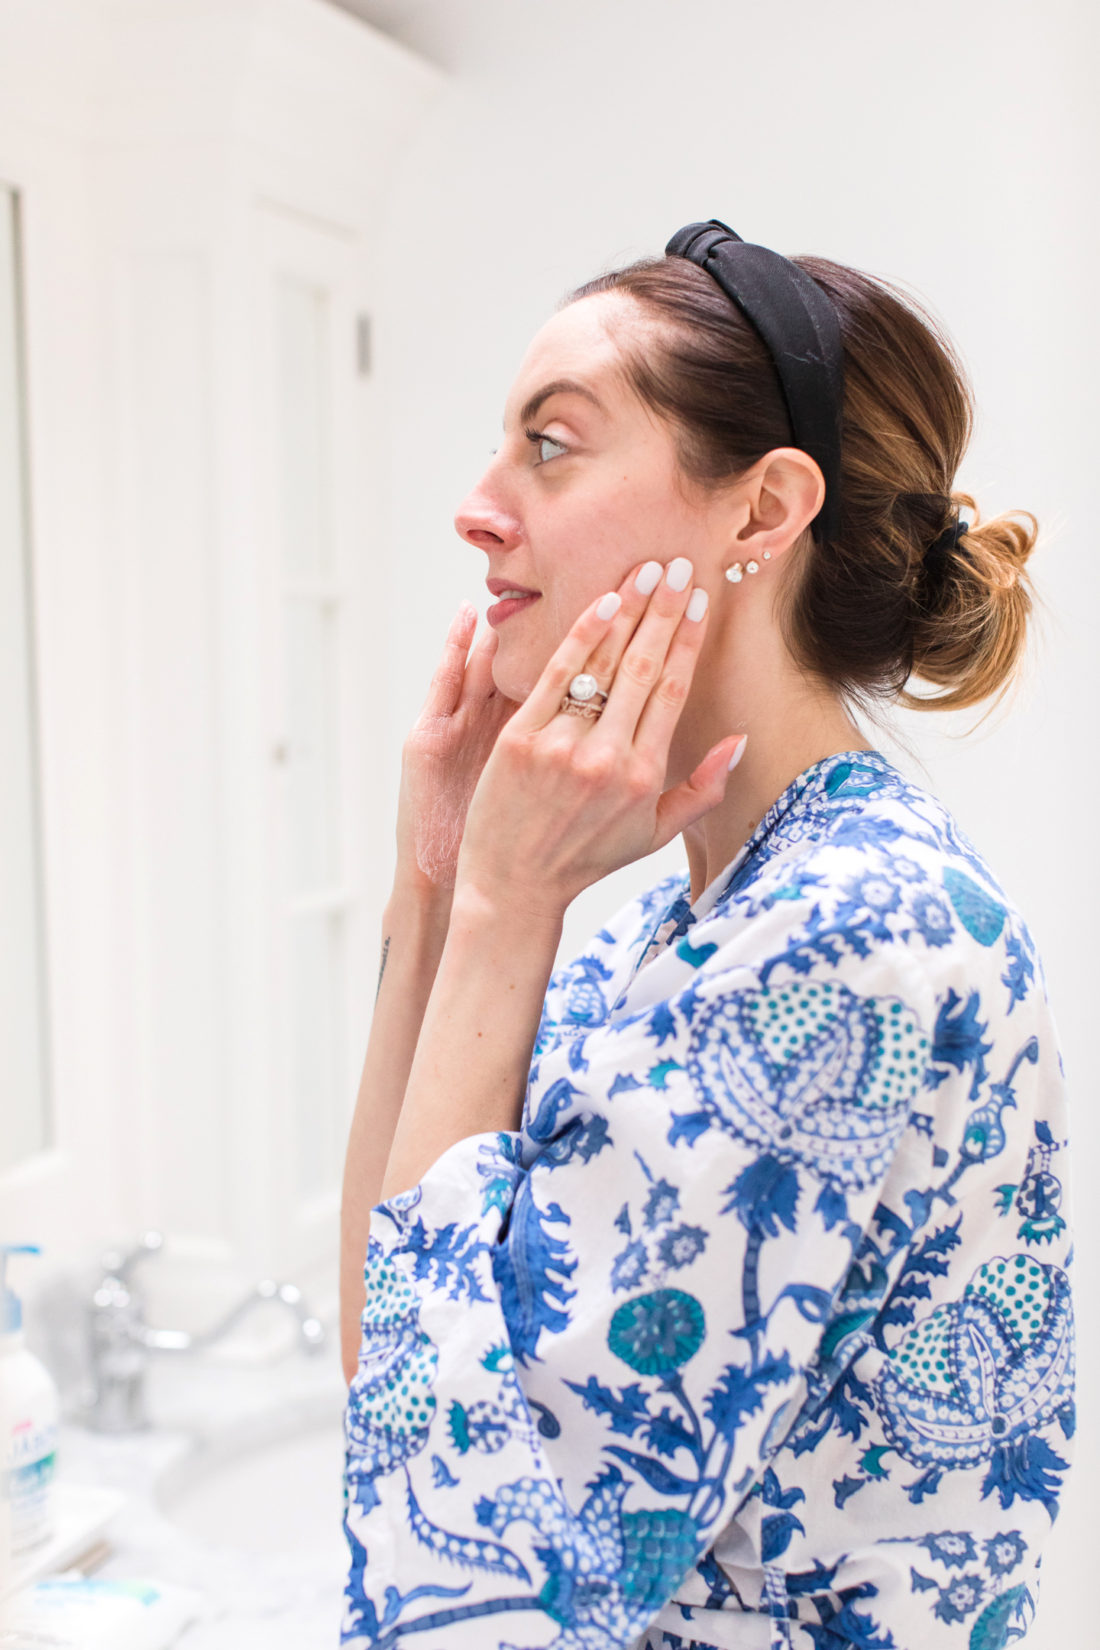 Eva Amurri Martino applies facial cream